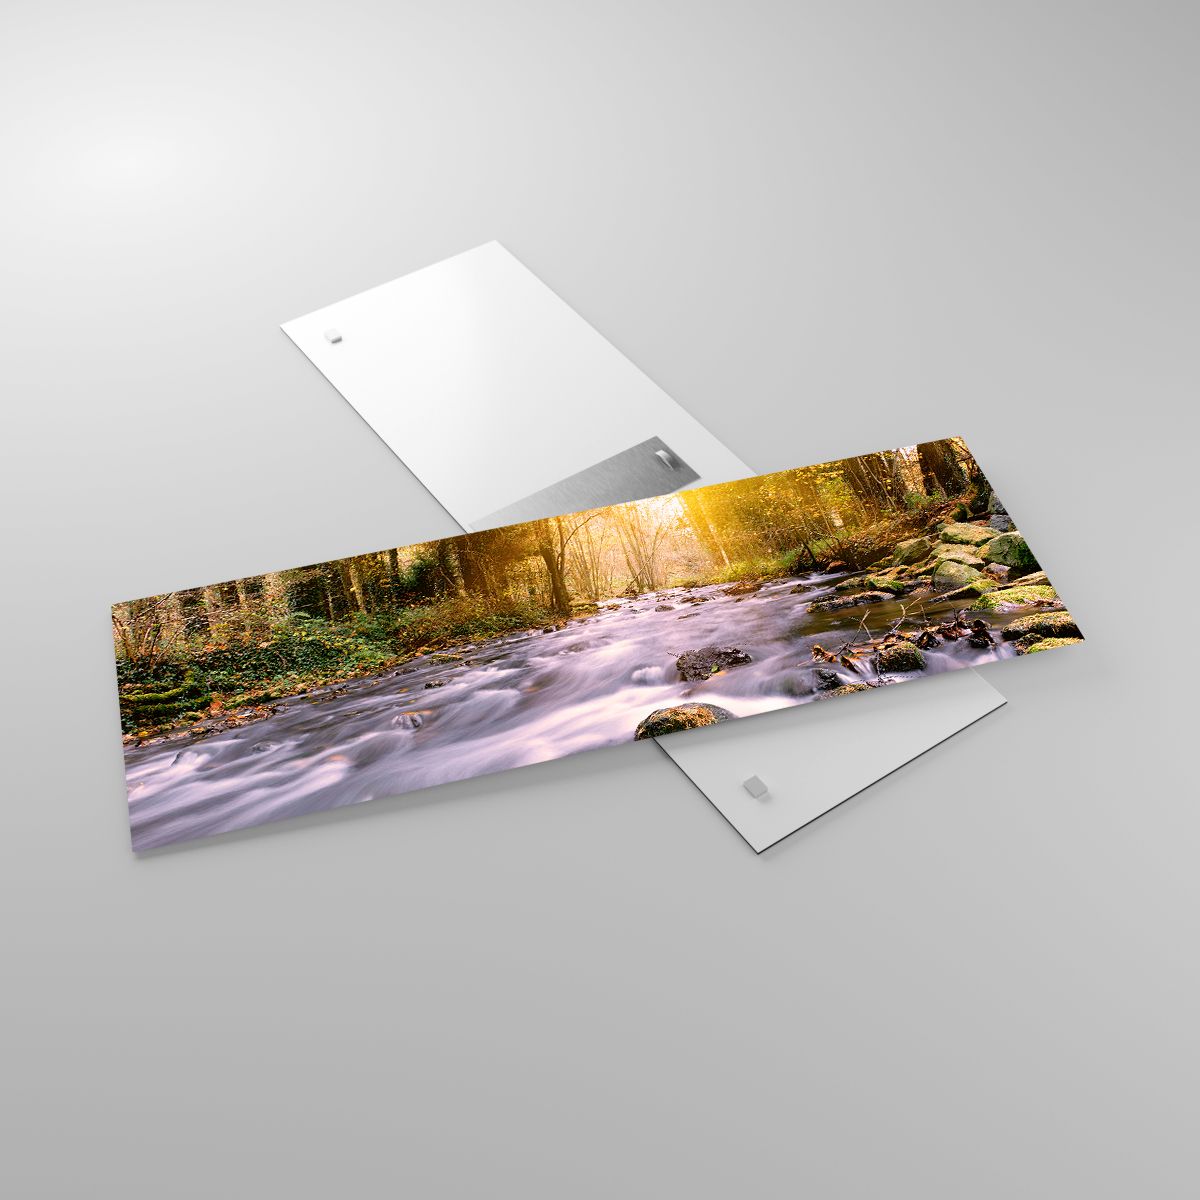 Glasbild Landschaft, Glasbild Gebirgsbach, Glasbild Wald, Glasbild Natur, Glasbild Sonne